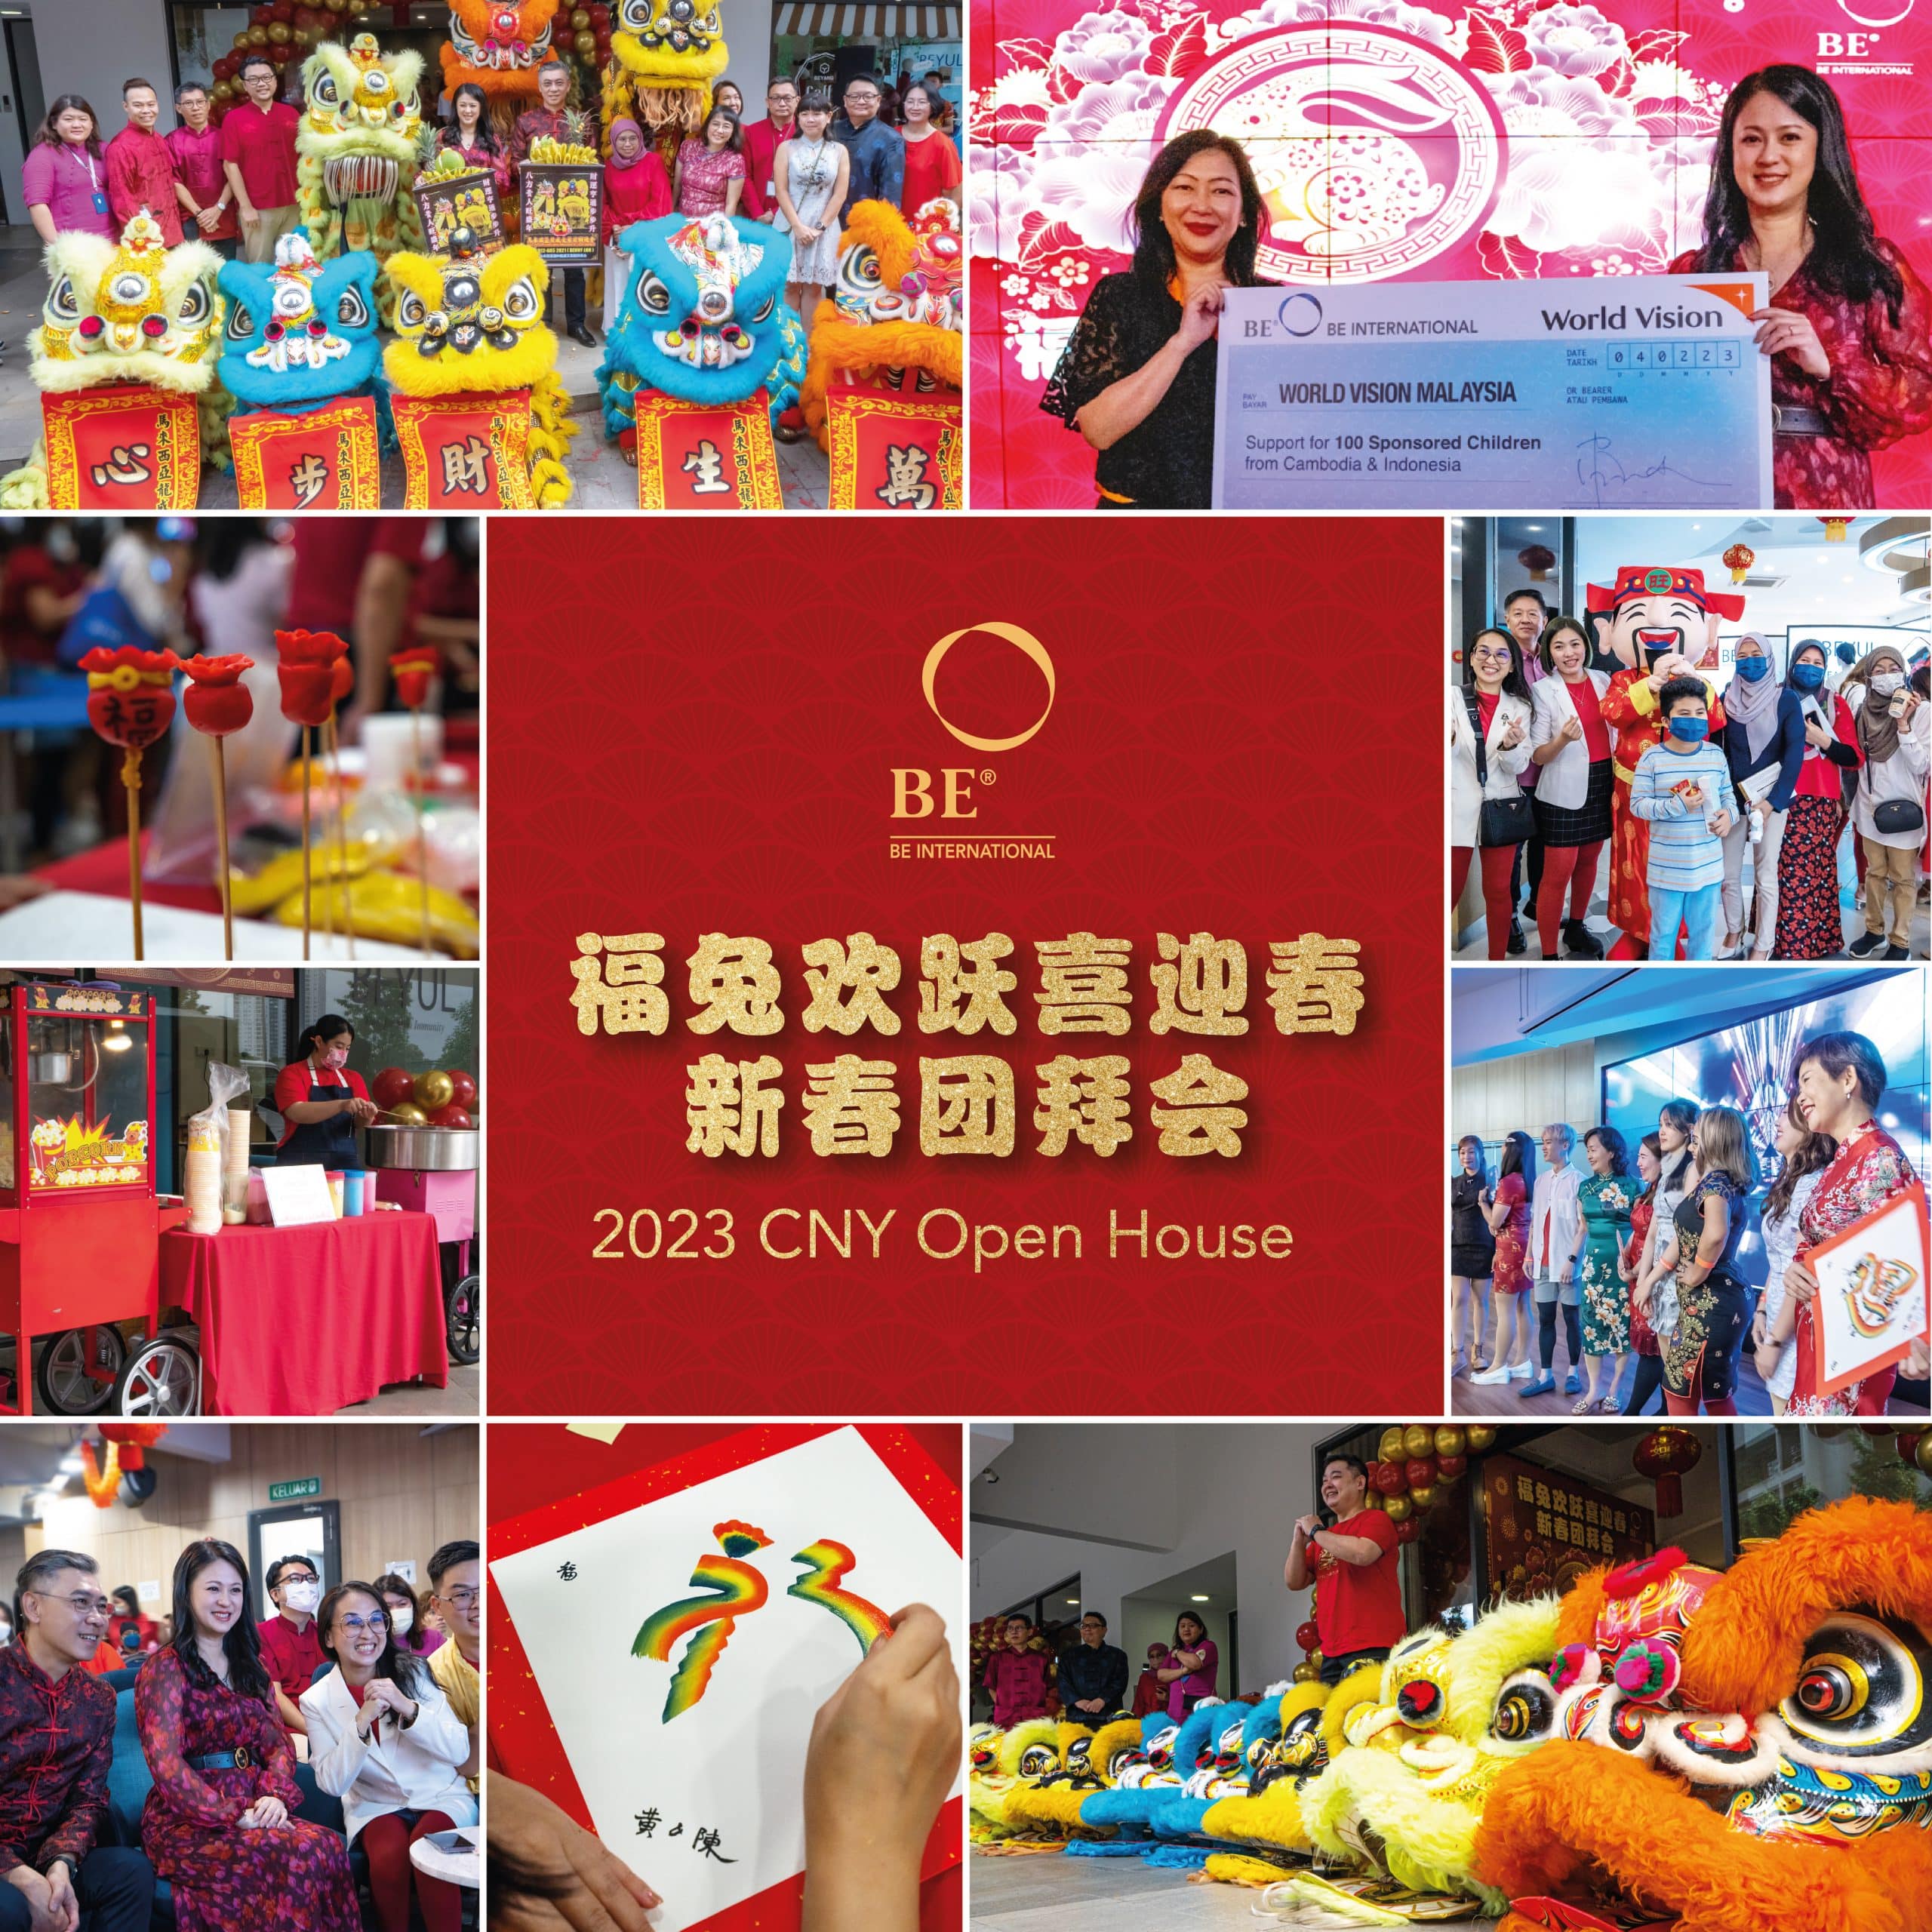 2023 CNY Open House Celebration